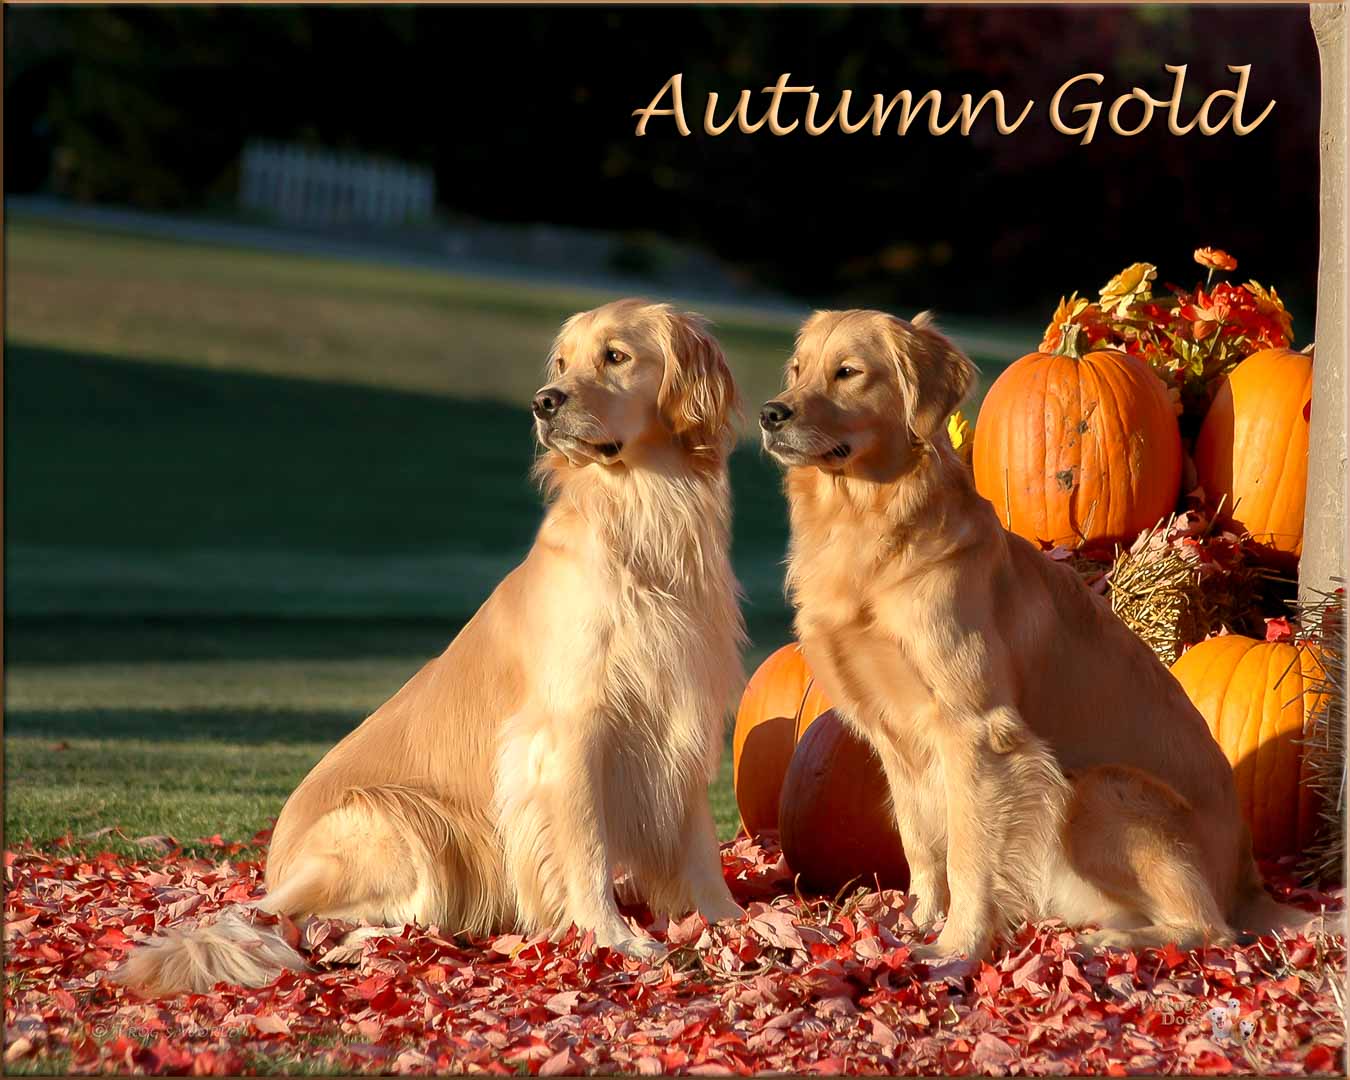 Two golden retrievers and an autumn evening